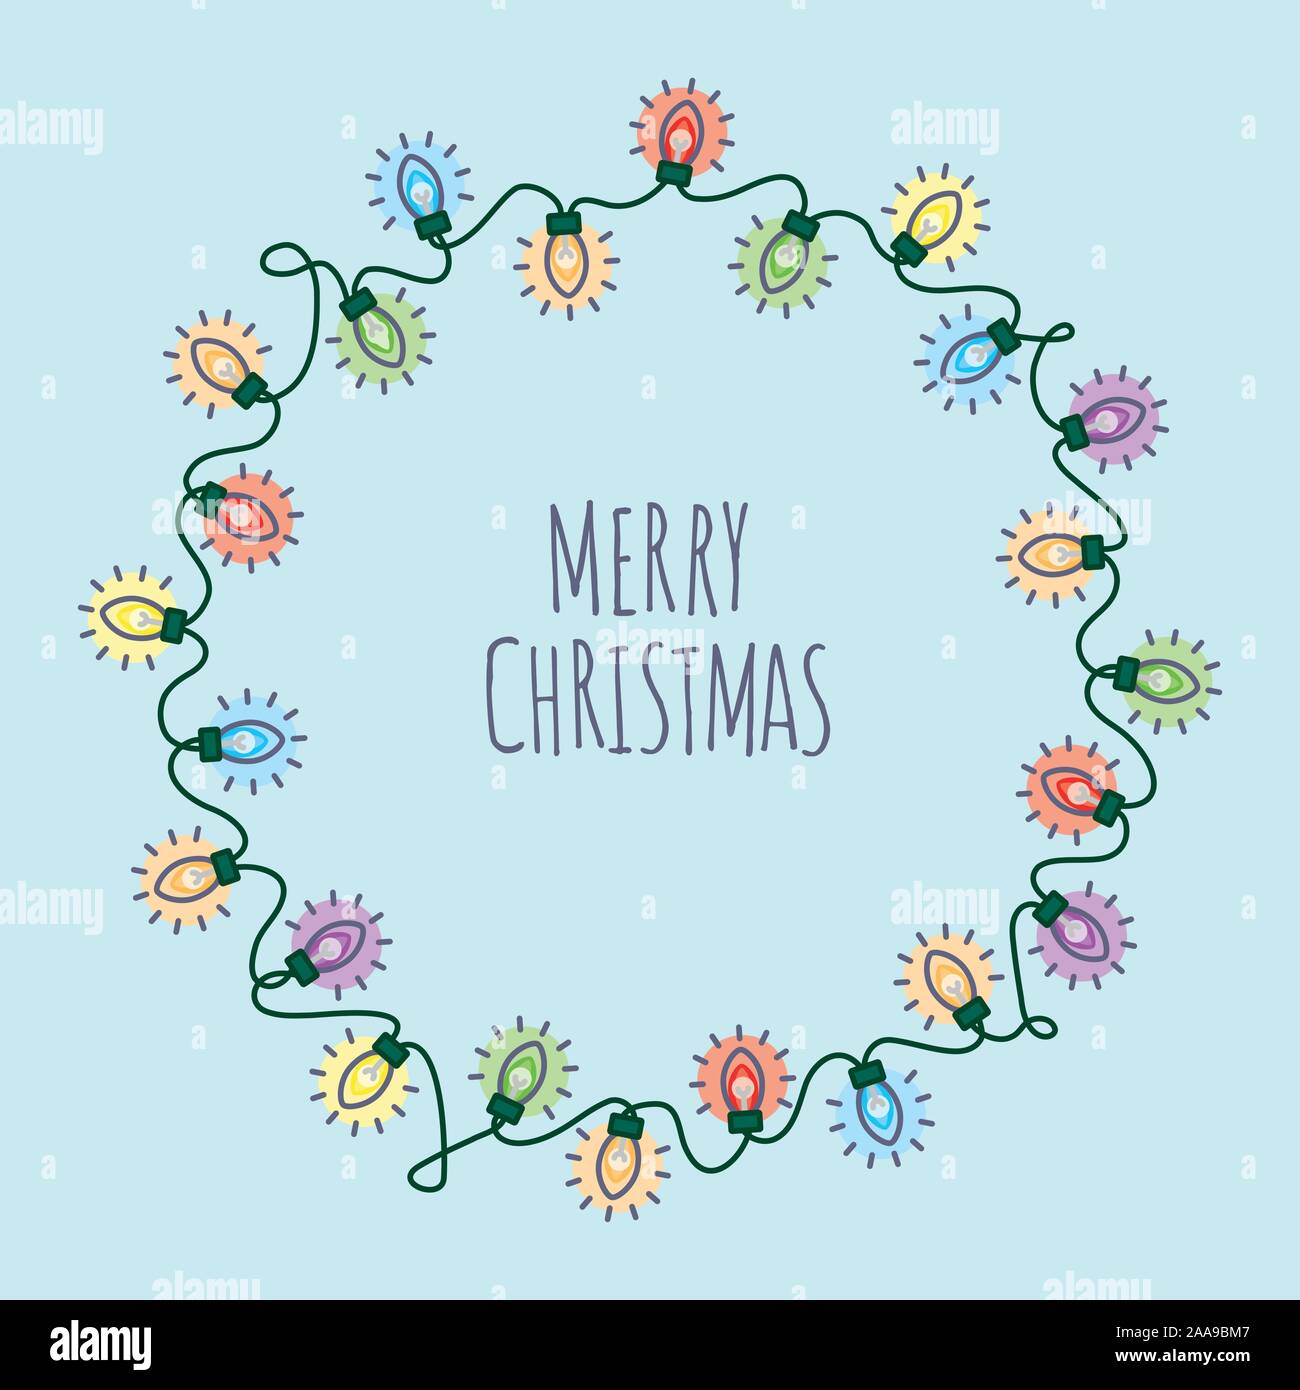 Frohe Weihnachten quadrat Vector Illustration mit runden Weihnachtsbeleuchtung Girlande um Text auf hellblauem Hintergrund Stock Vektor